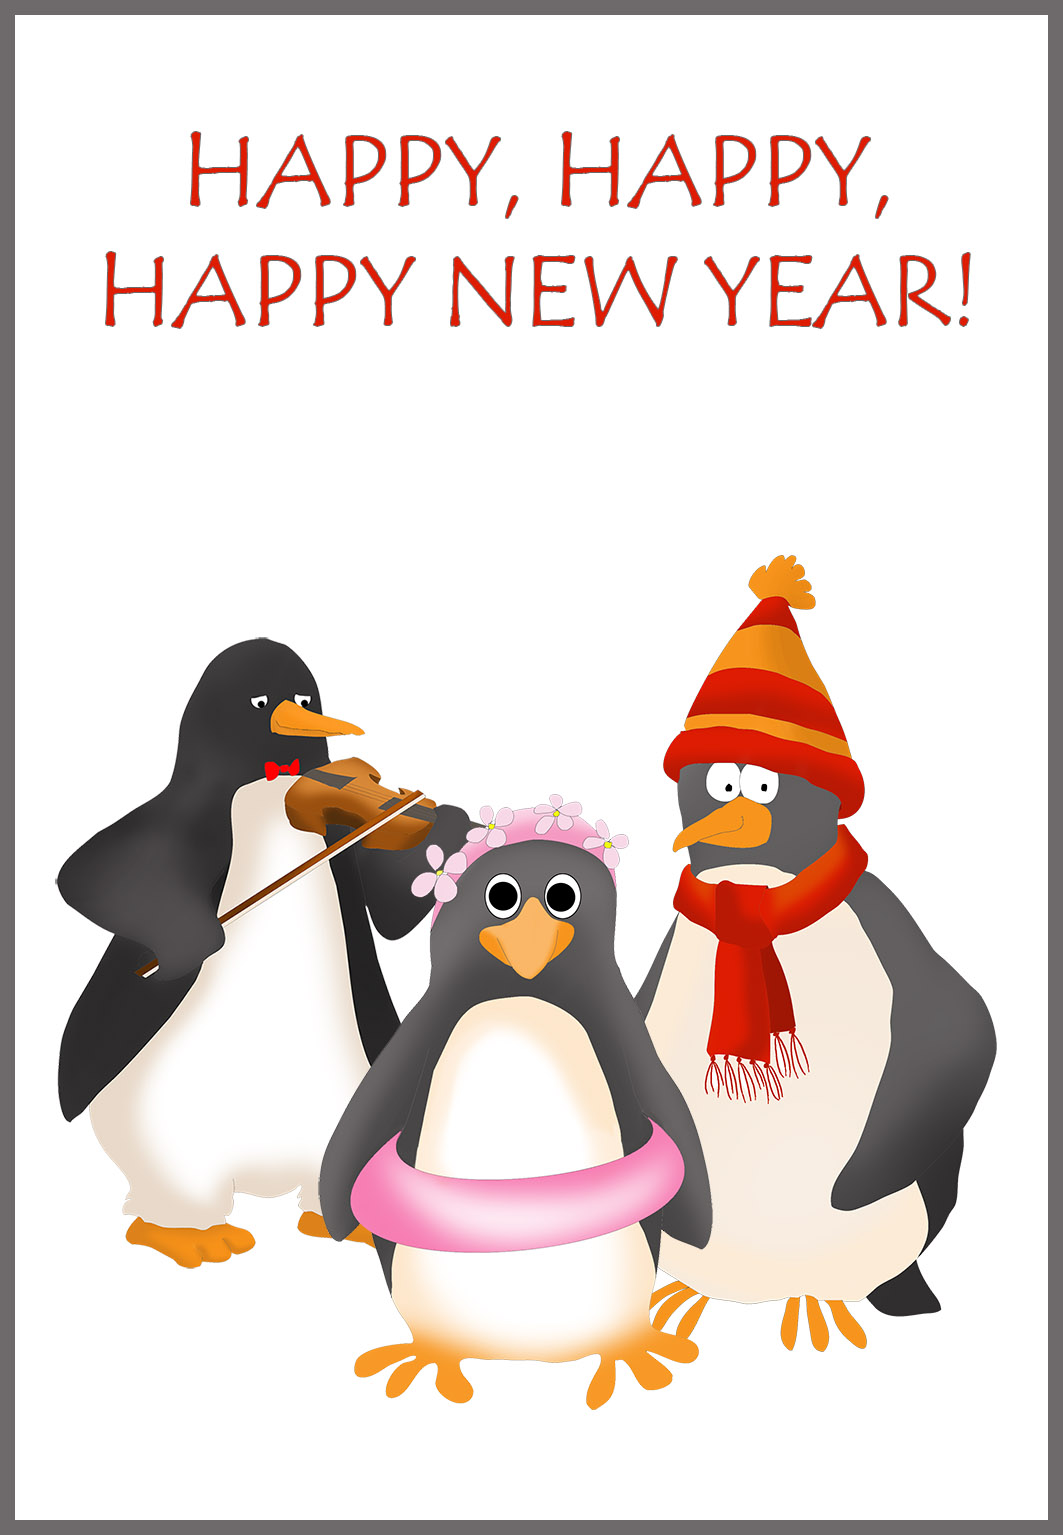 Send a Happy New Year Card